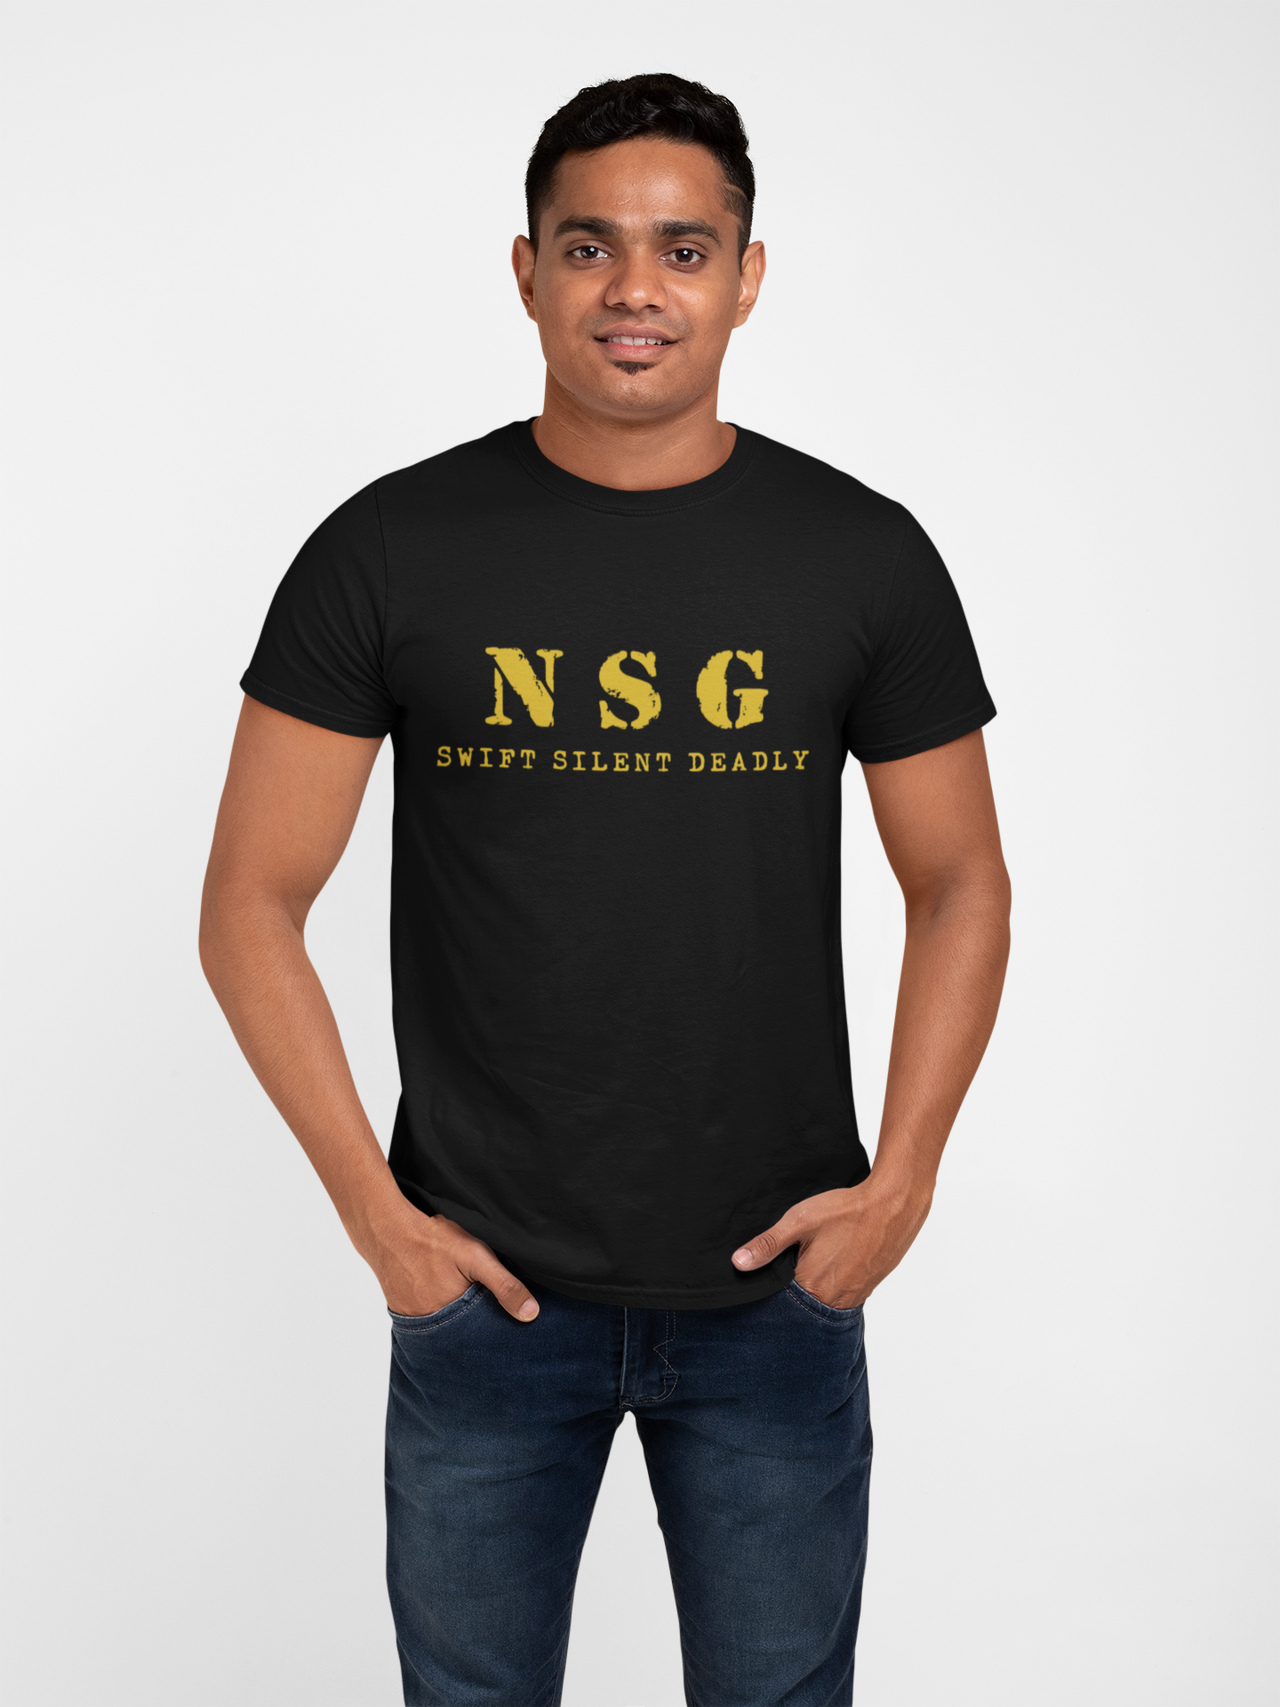 NSG T-shirt - NSG - Swift Silent Deadly (Men)